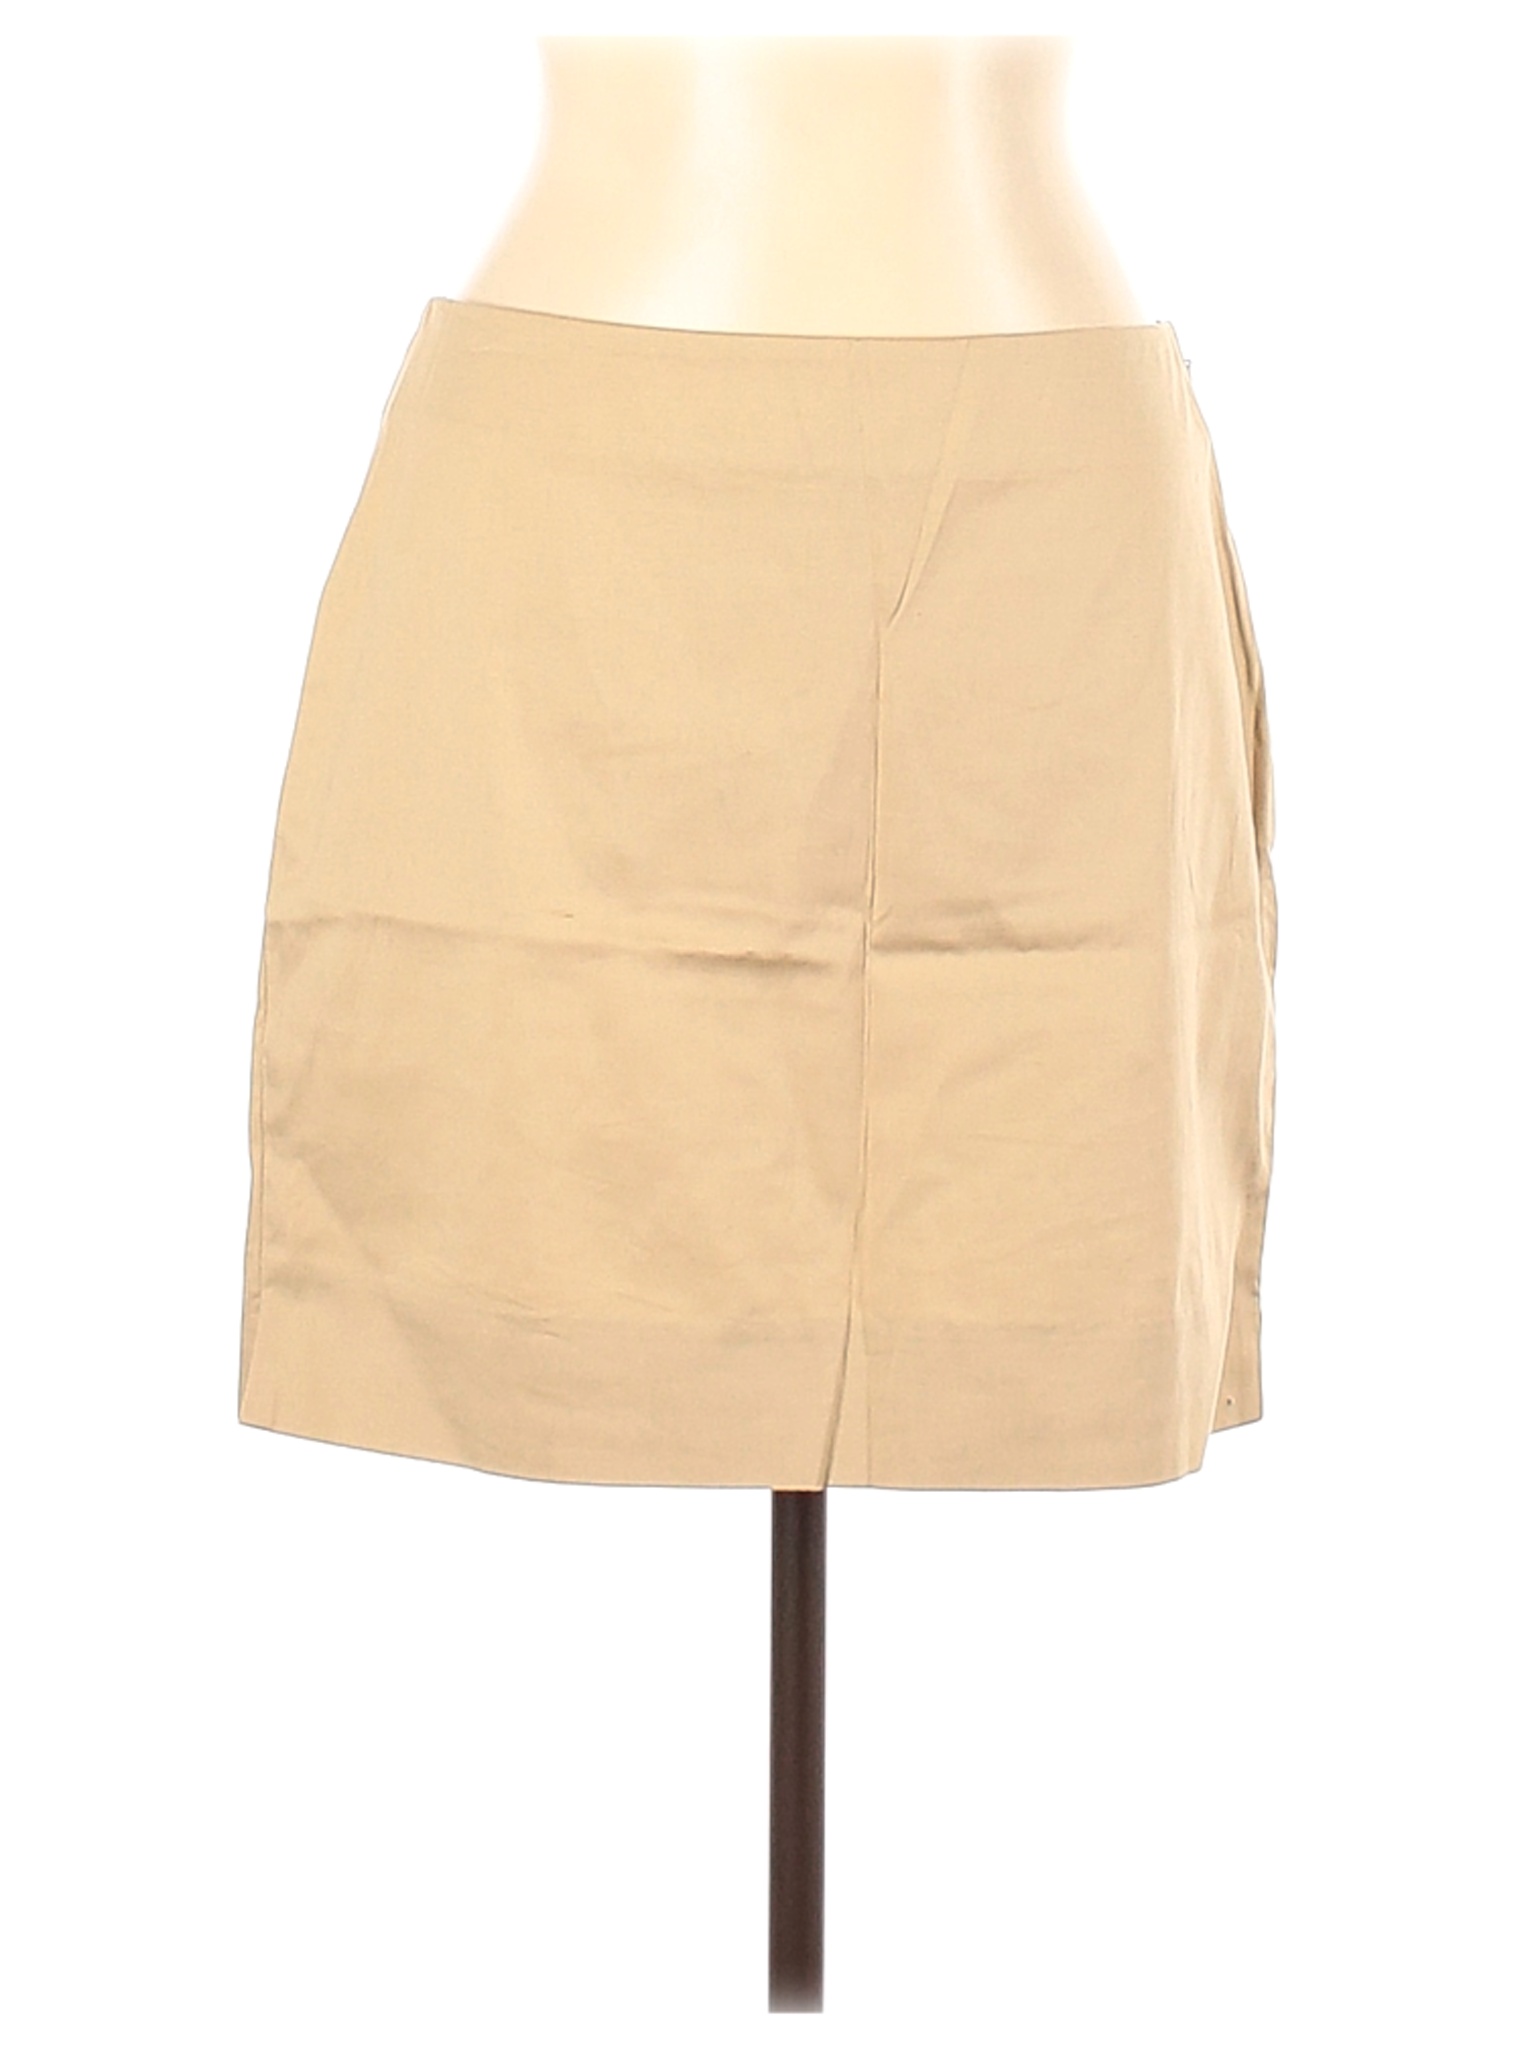 Ralph by Ralph Lauren Women Brown Casual Skirt 12 | eBay